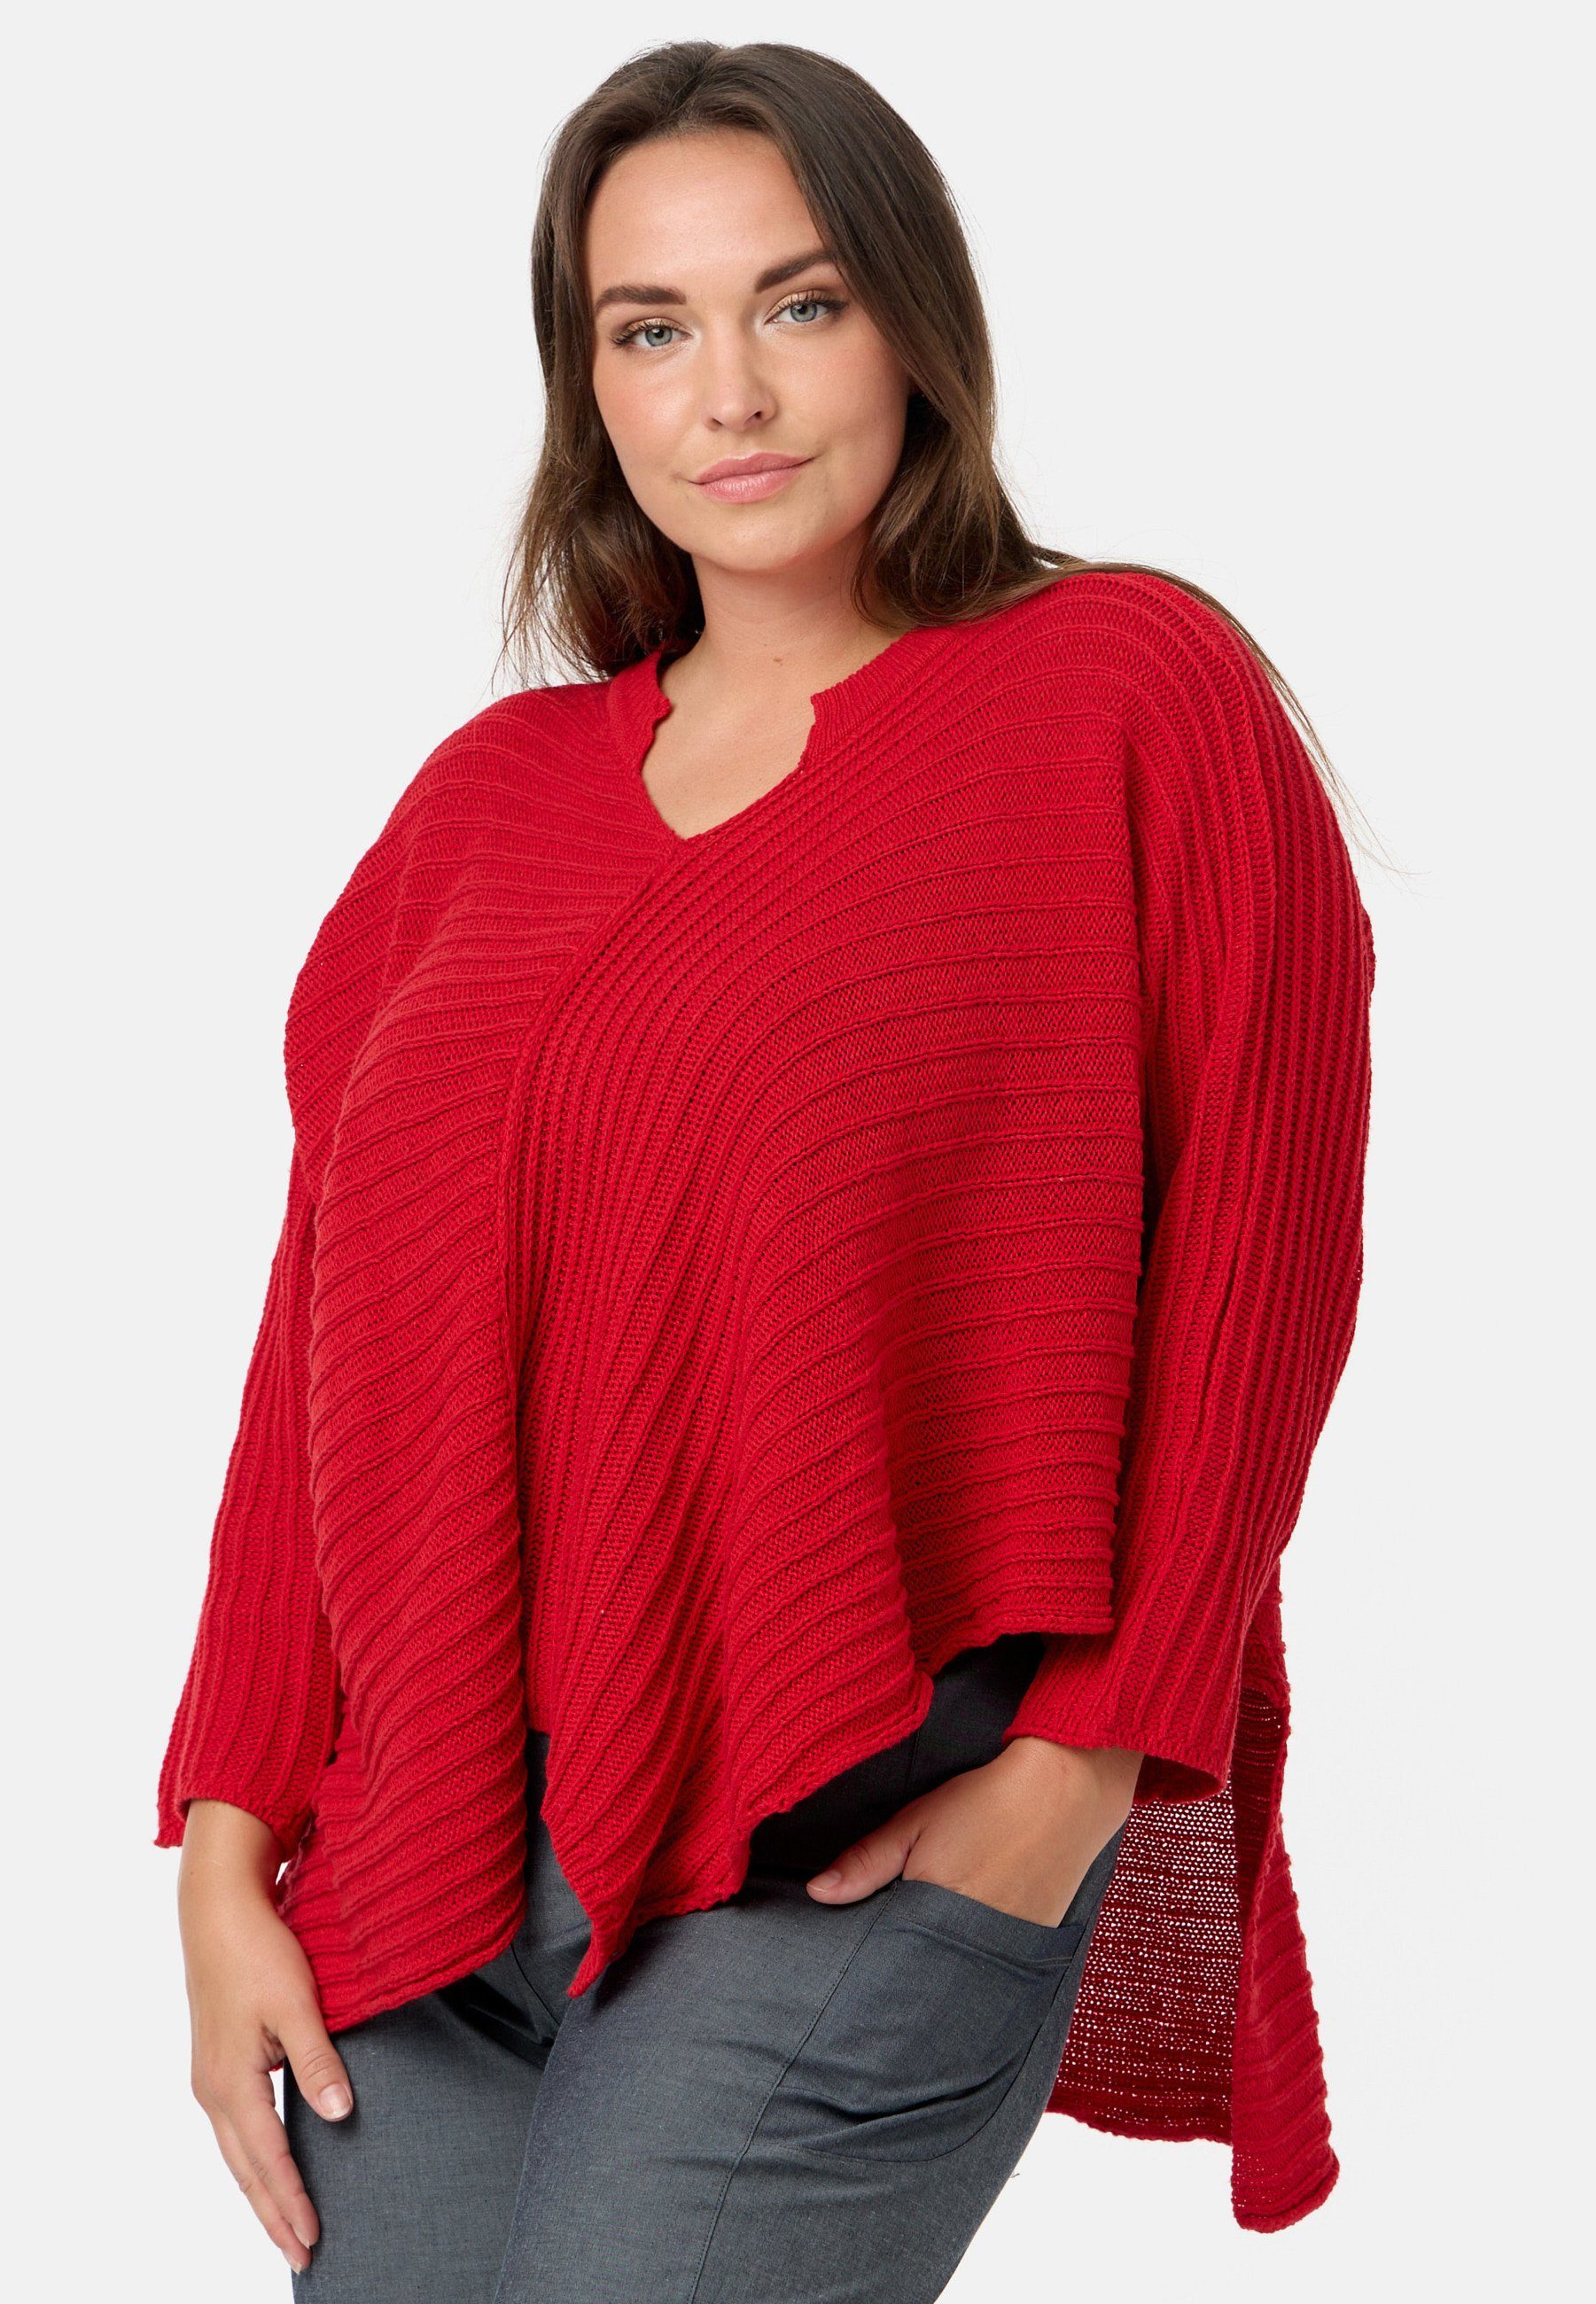 Kekoo Baumwolle Strickpullover 'Pure' Strickshirt 100% aus Rot Stil asymmetrischem im